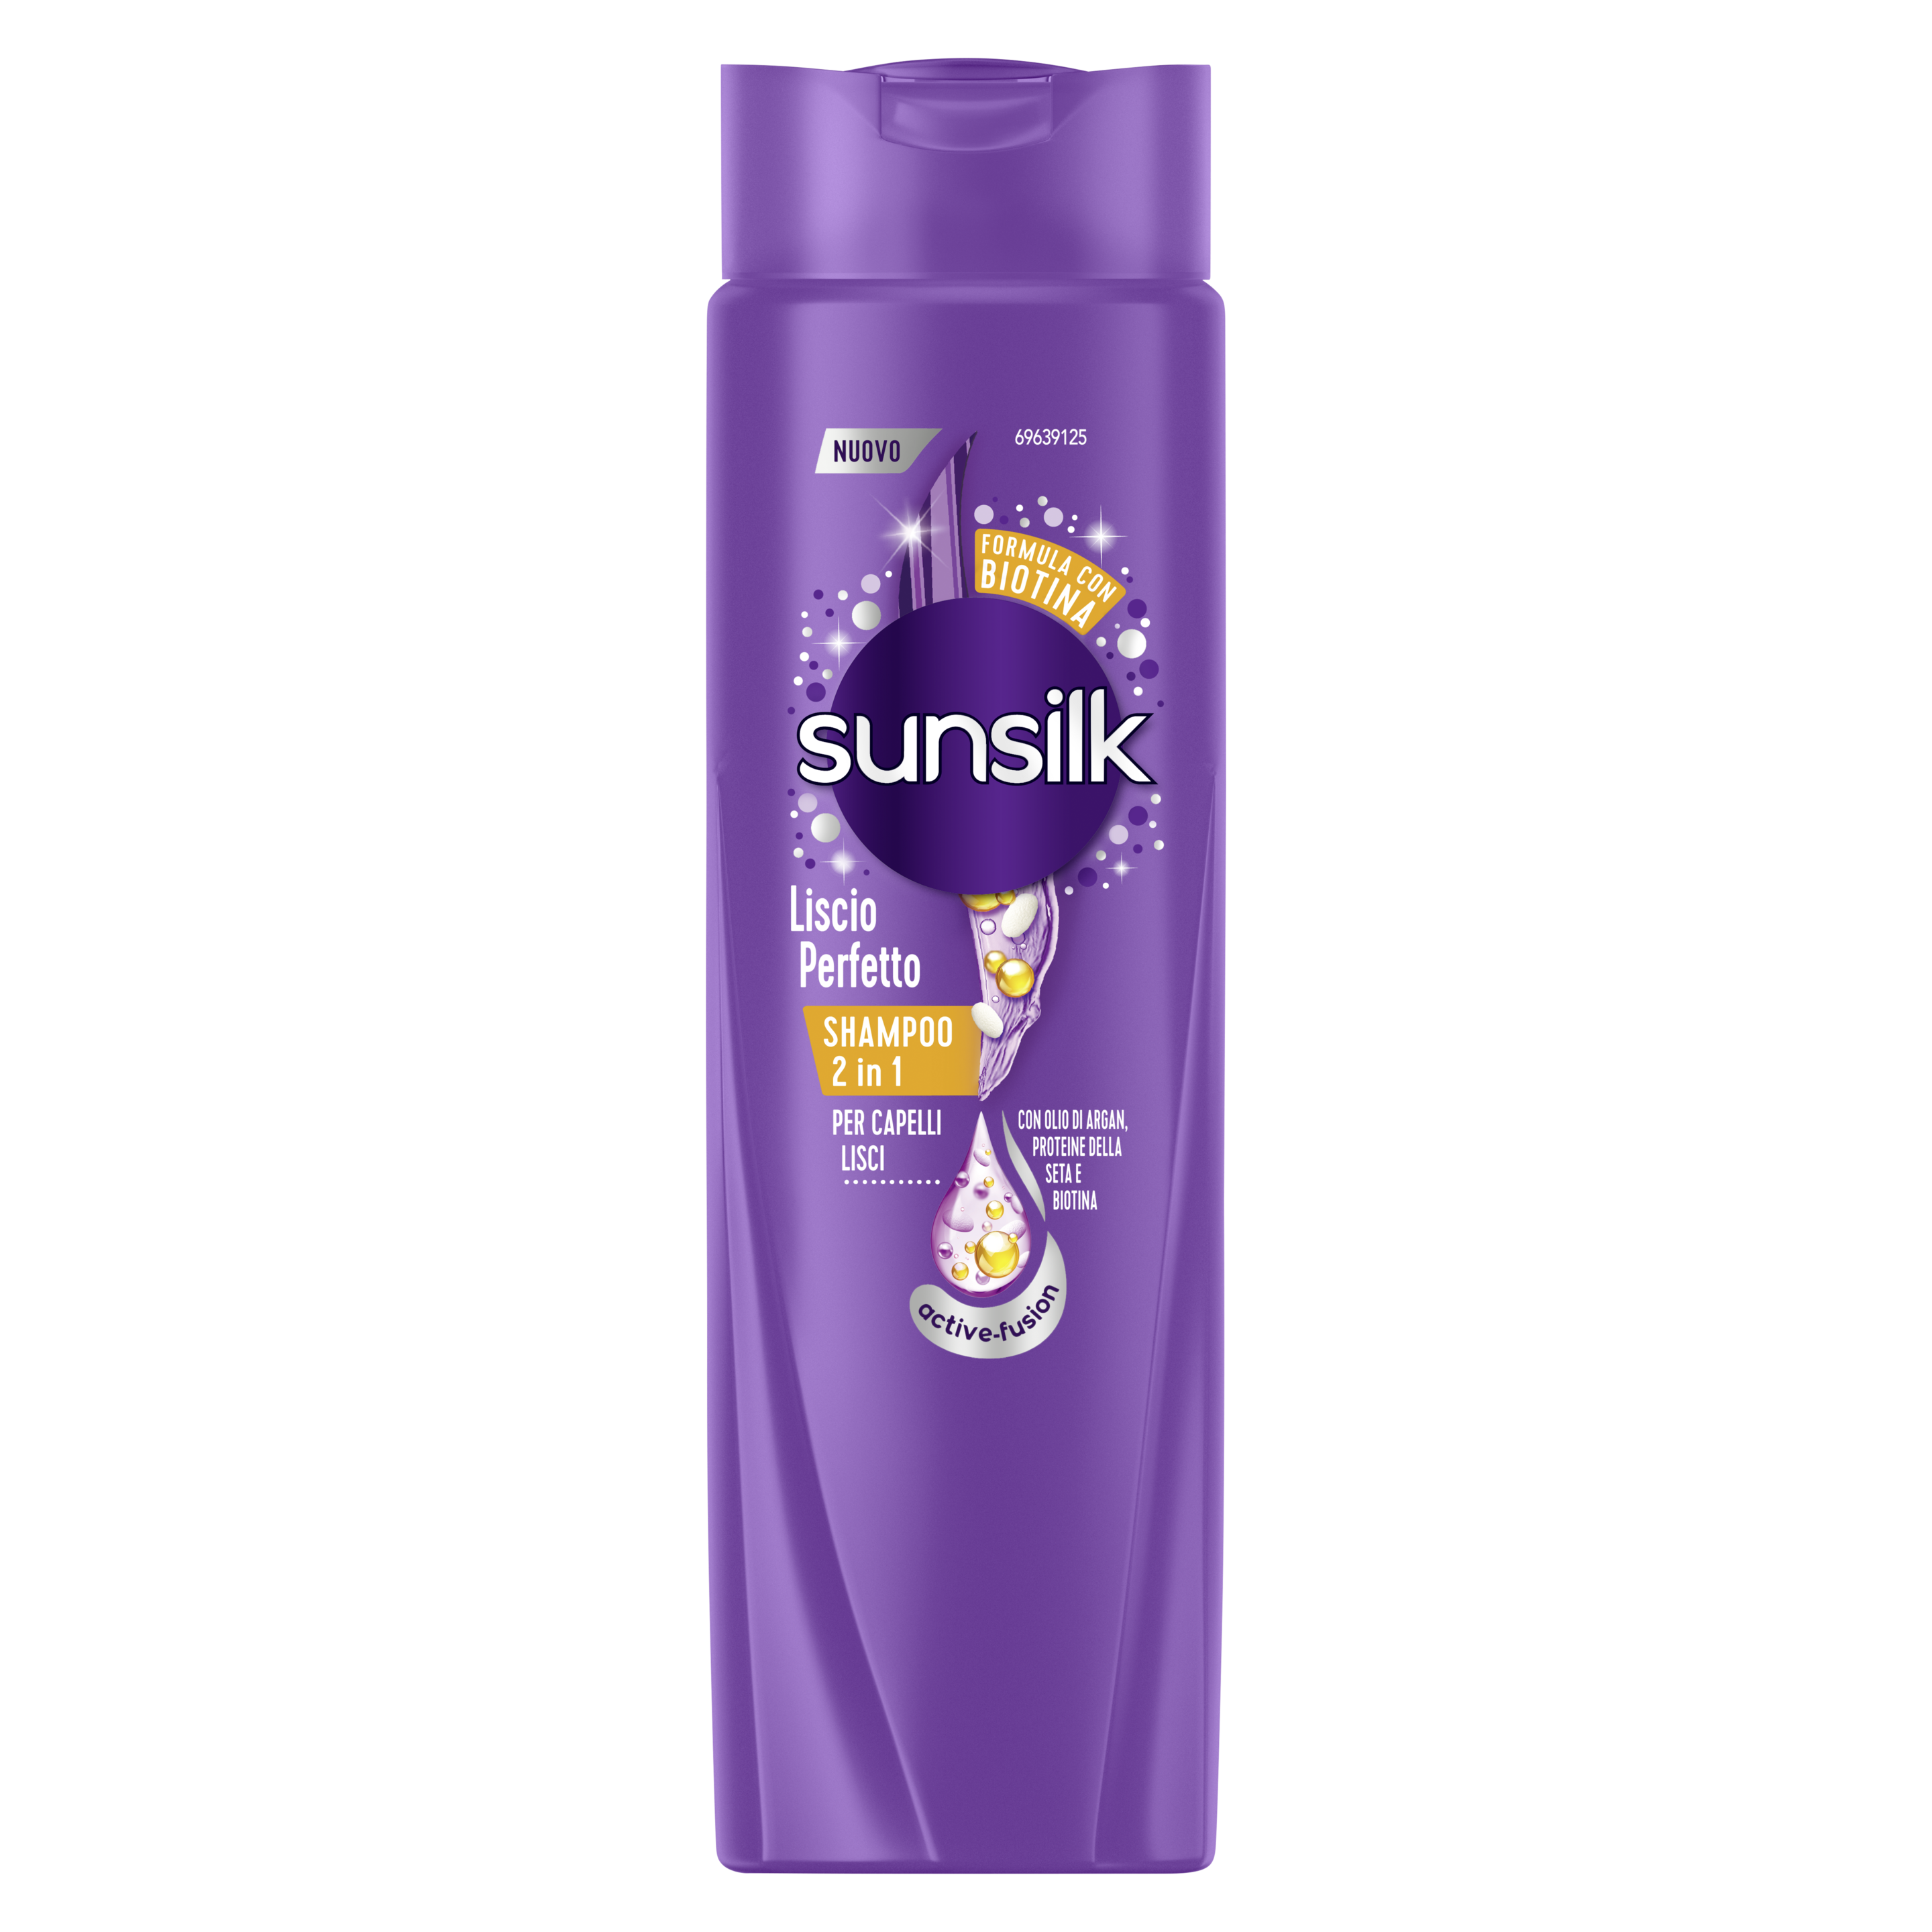 Sunsilk Shampoo 2in1 Liscio Perfetto 250 ml